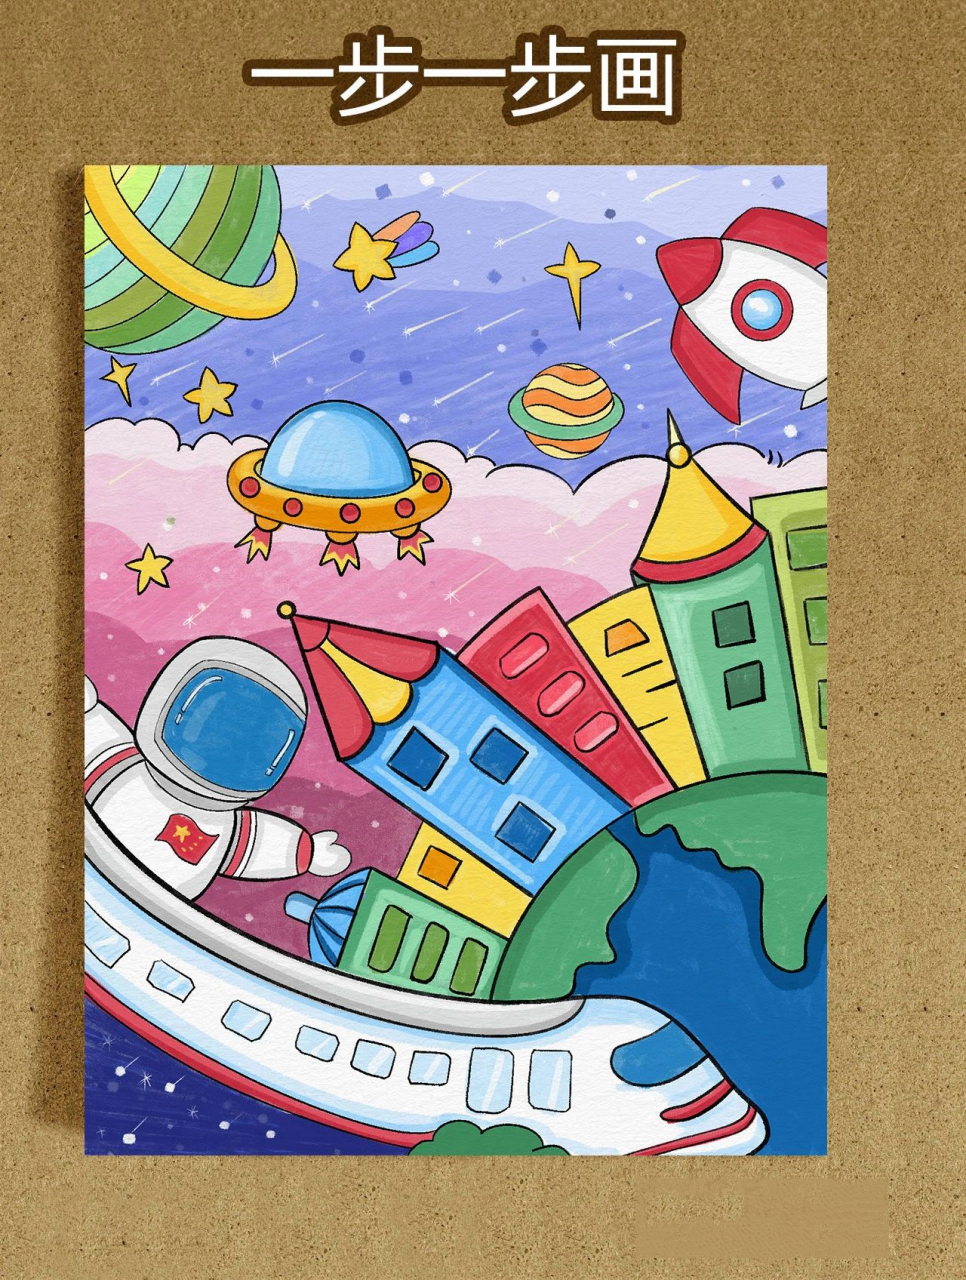 科技主题画,太空火箭地球房屋建筑儿童画, 未来世界科技主题画来了!